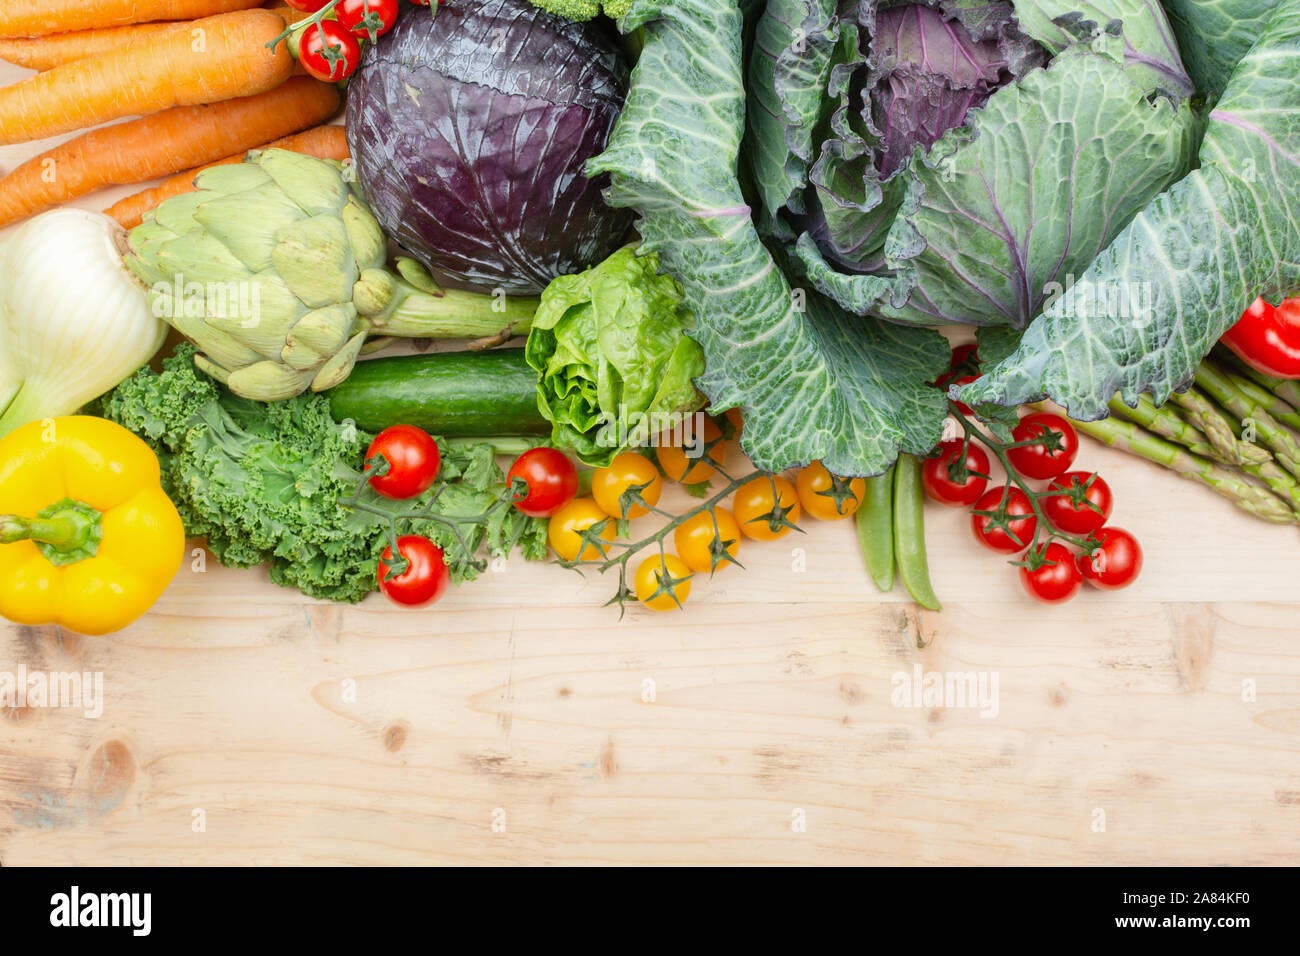 Blick von oben auf die Gemüse auf Holztisch, Karotten velery Tomaten weißkohl Brokkoli, Kopie, selektiven Fokus Stockfoto